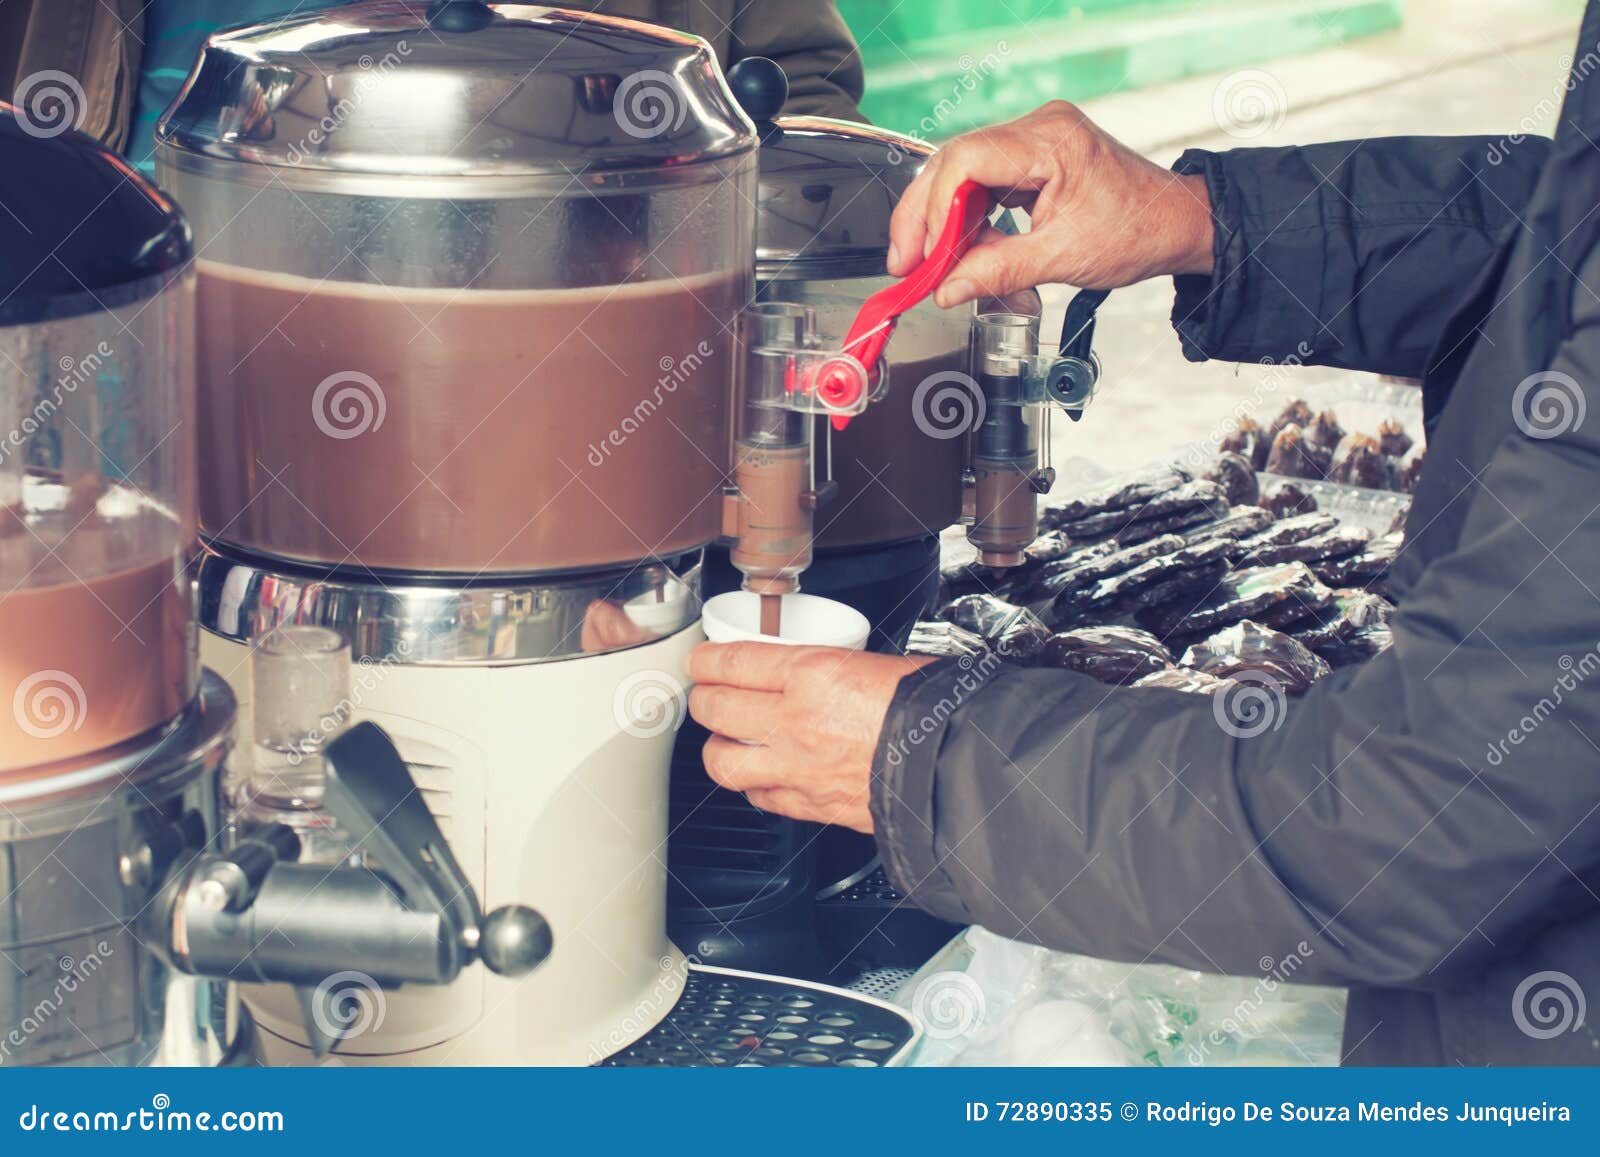 Machine de chocolat chaud image stock. Image du lait - 72890335